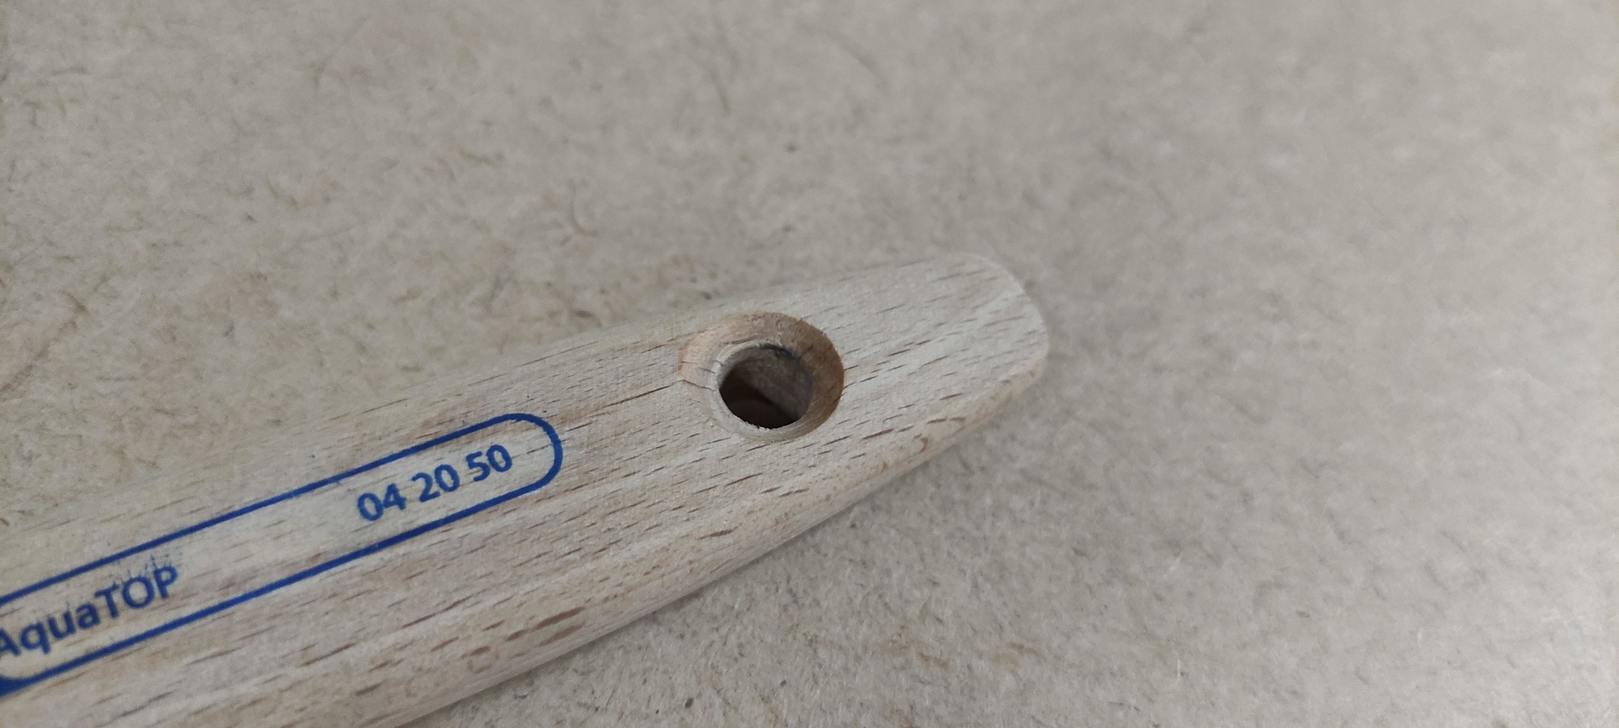 Кисть флейцевая AquaTop, 50 мм, размер 9, синтетическая щетина STORCH (042050)